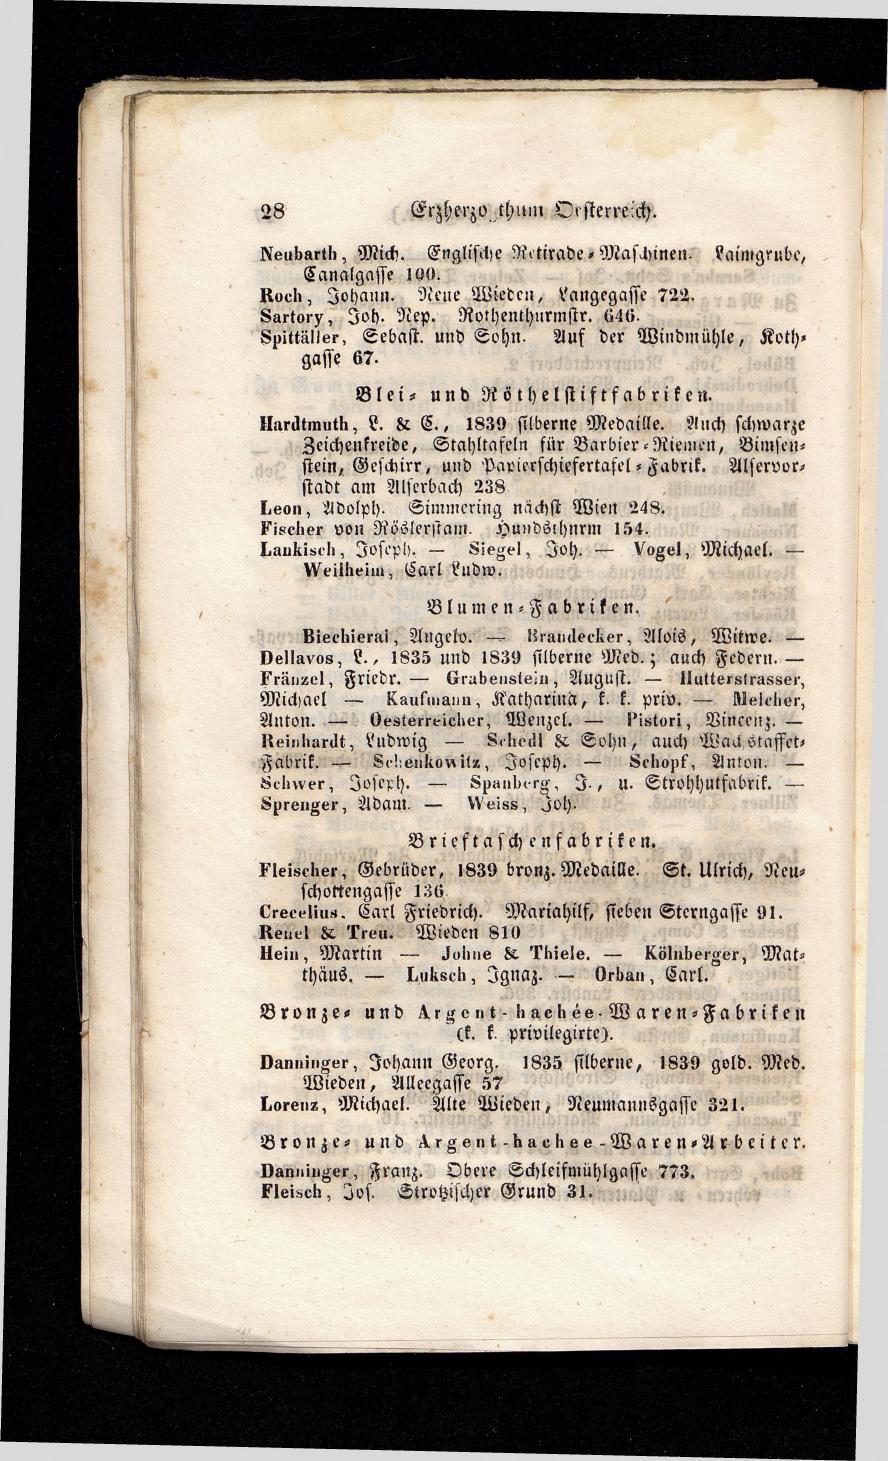 Grosses Adressbuch der Kaufleute. No. 13. Oesterreich ober u. unter der Enns 1844 - Seite 32